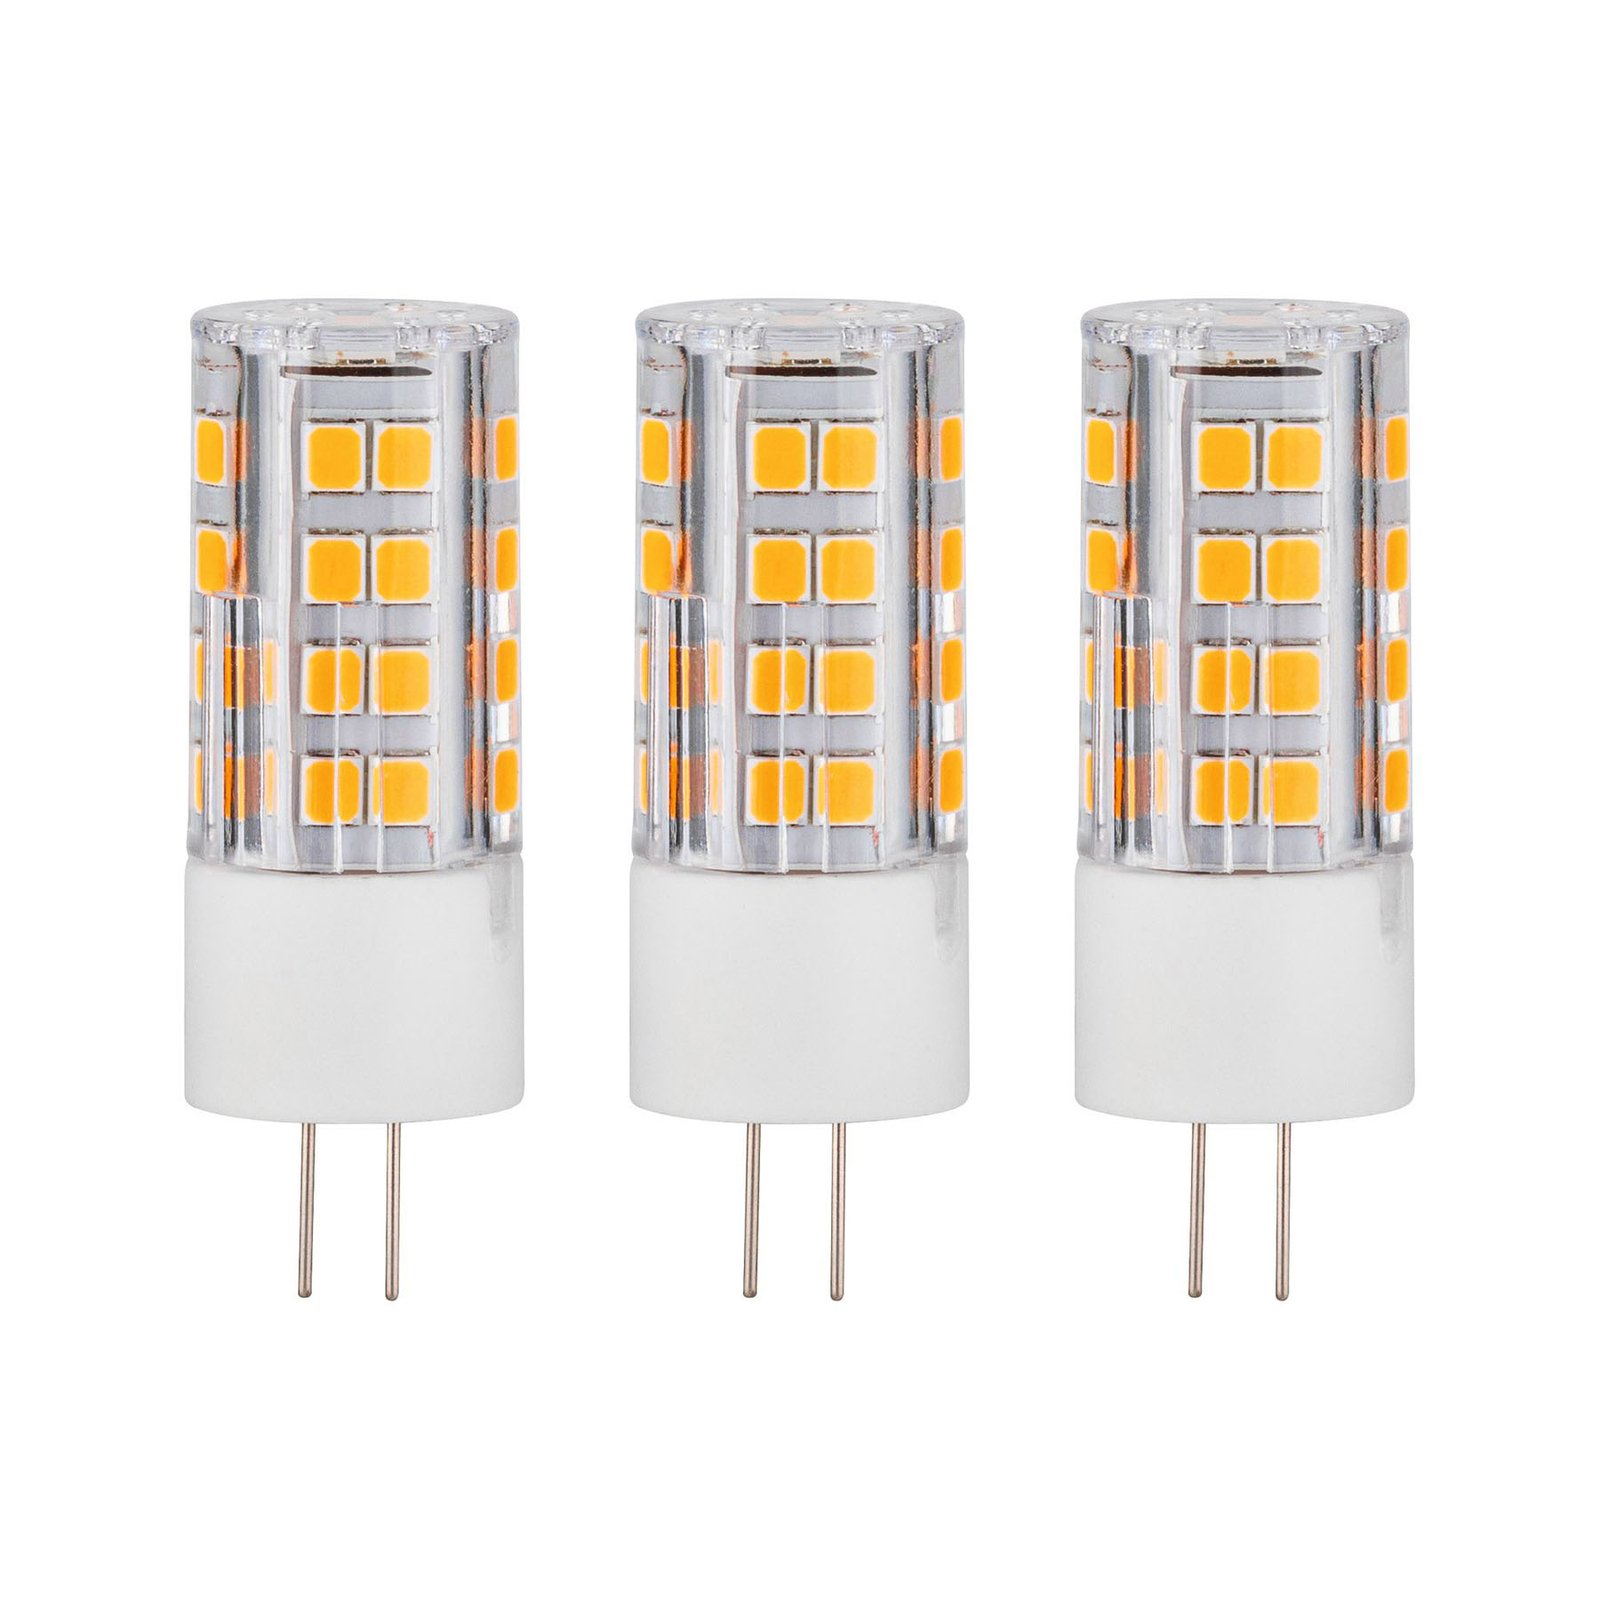 Paulmann bi-pin LED bulb G4 3 W 2,700 K 3-pack